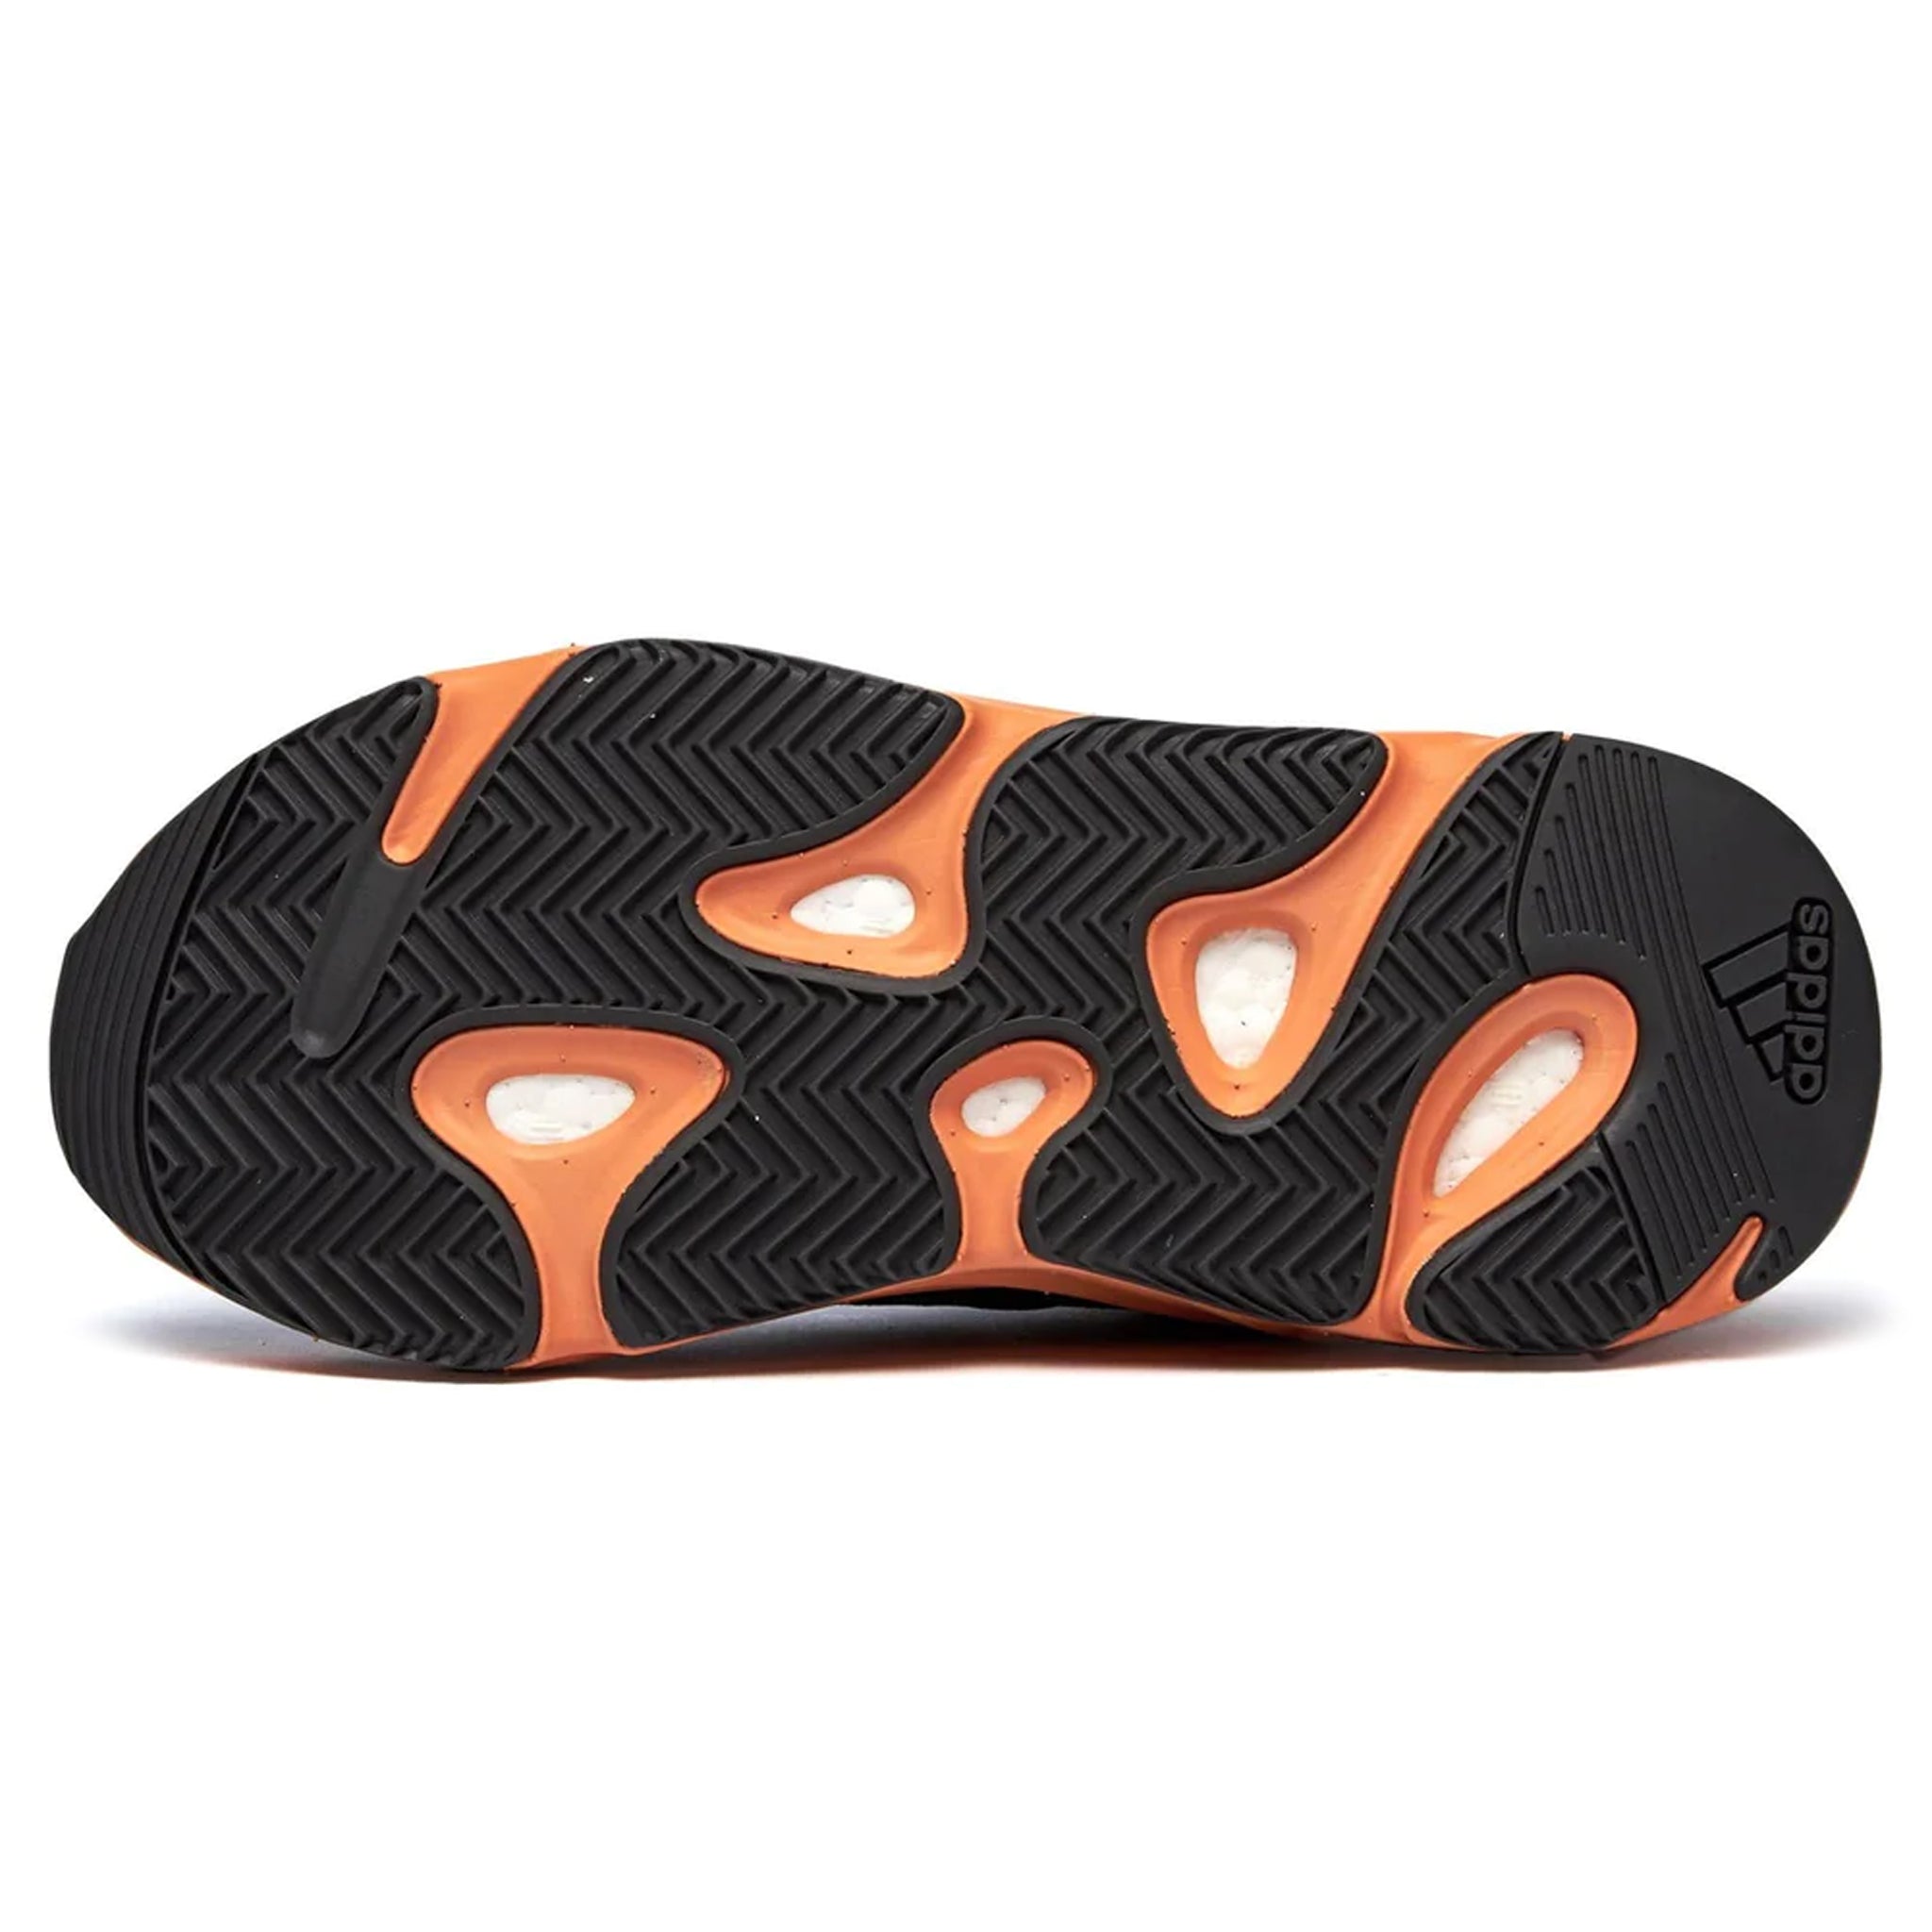 Sole view of Adidas Yeezy Boost 700 Boost Wash Orange GW0296